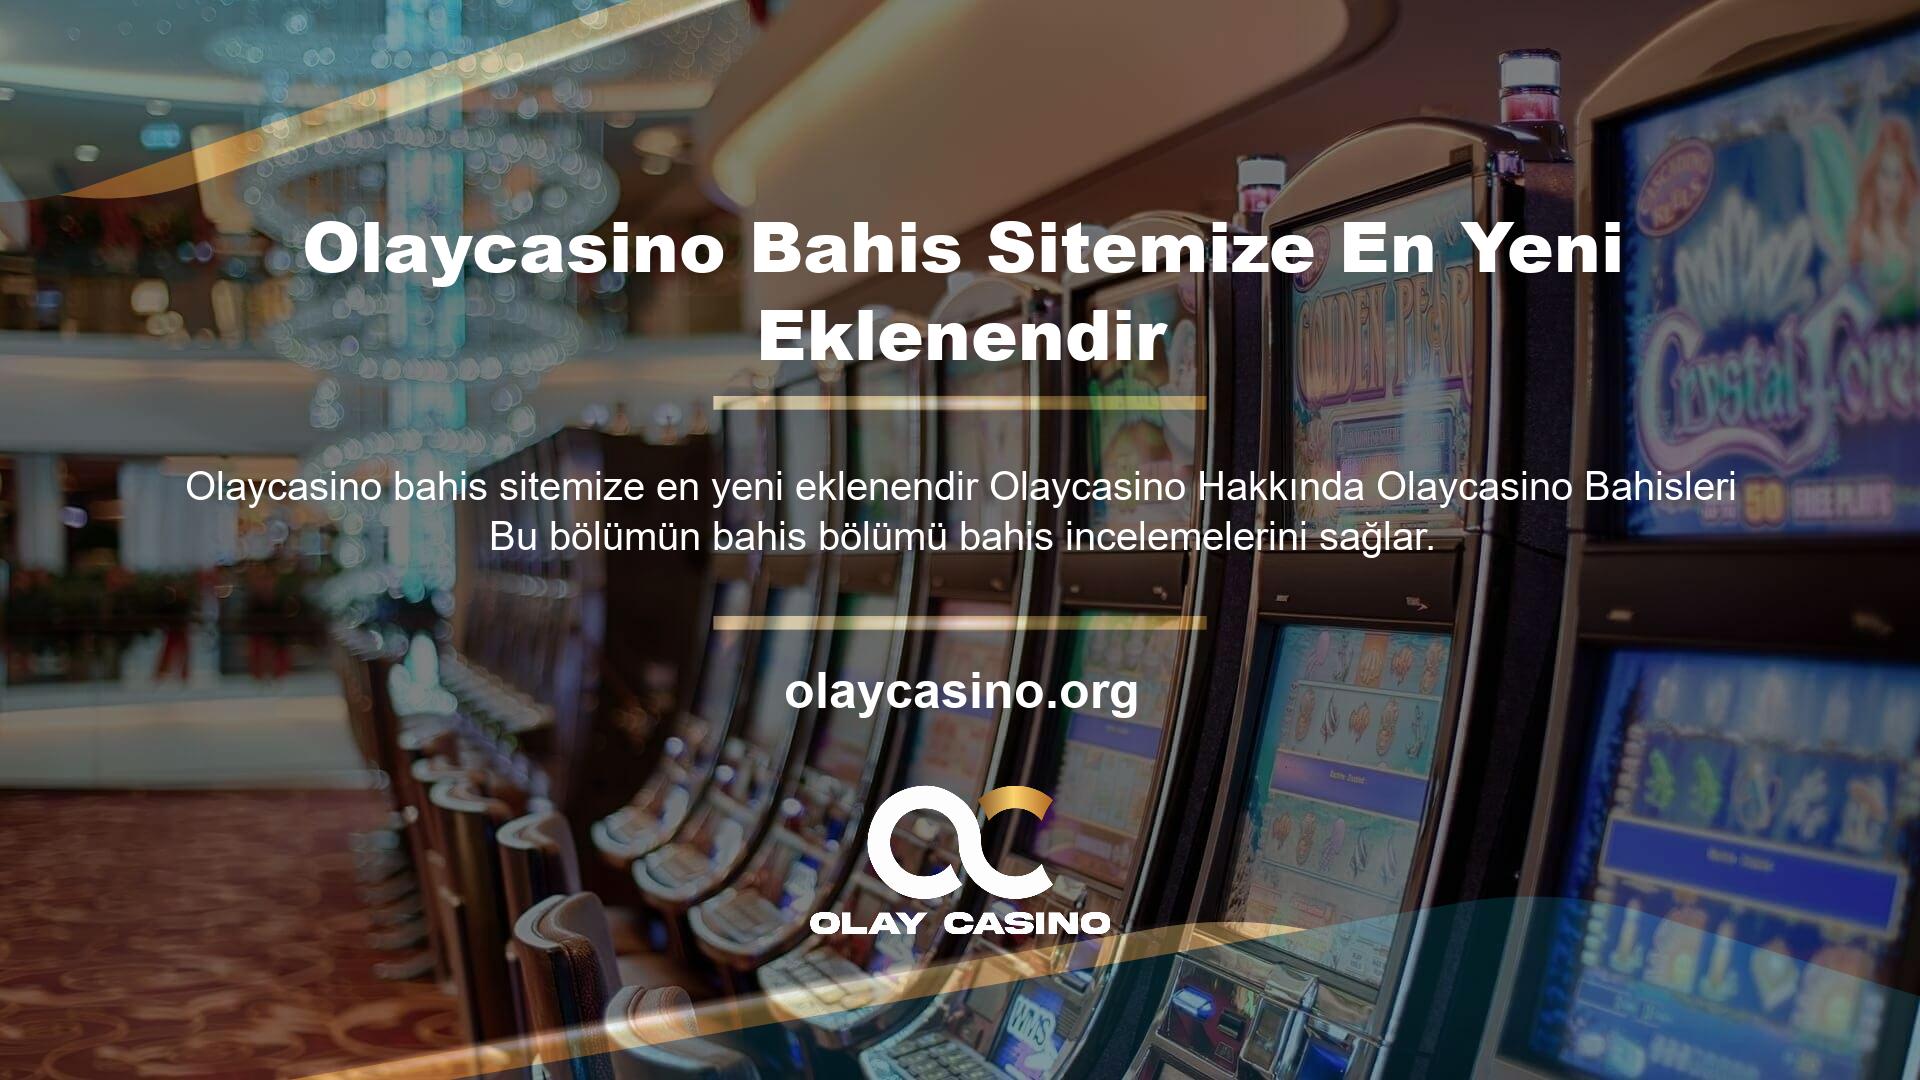 Bahis sitesine yeni eklenen Olaycasino, geniş bir oyun menüsü ve bahisle ilgili çeşitli hizmetler sunmaktadır